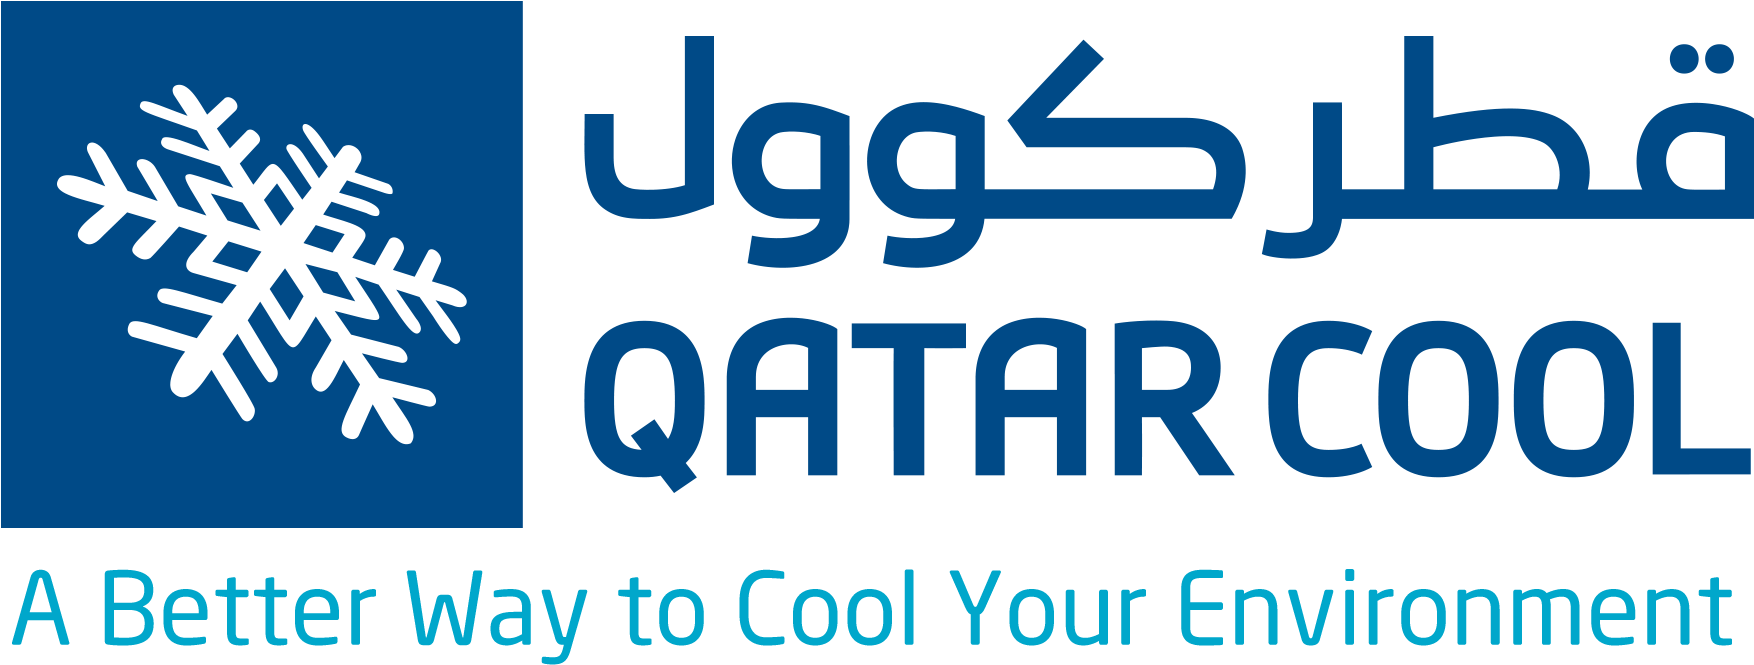 Qatar Cool Company Logo PNG image